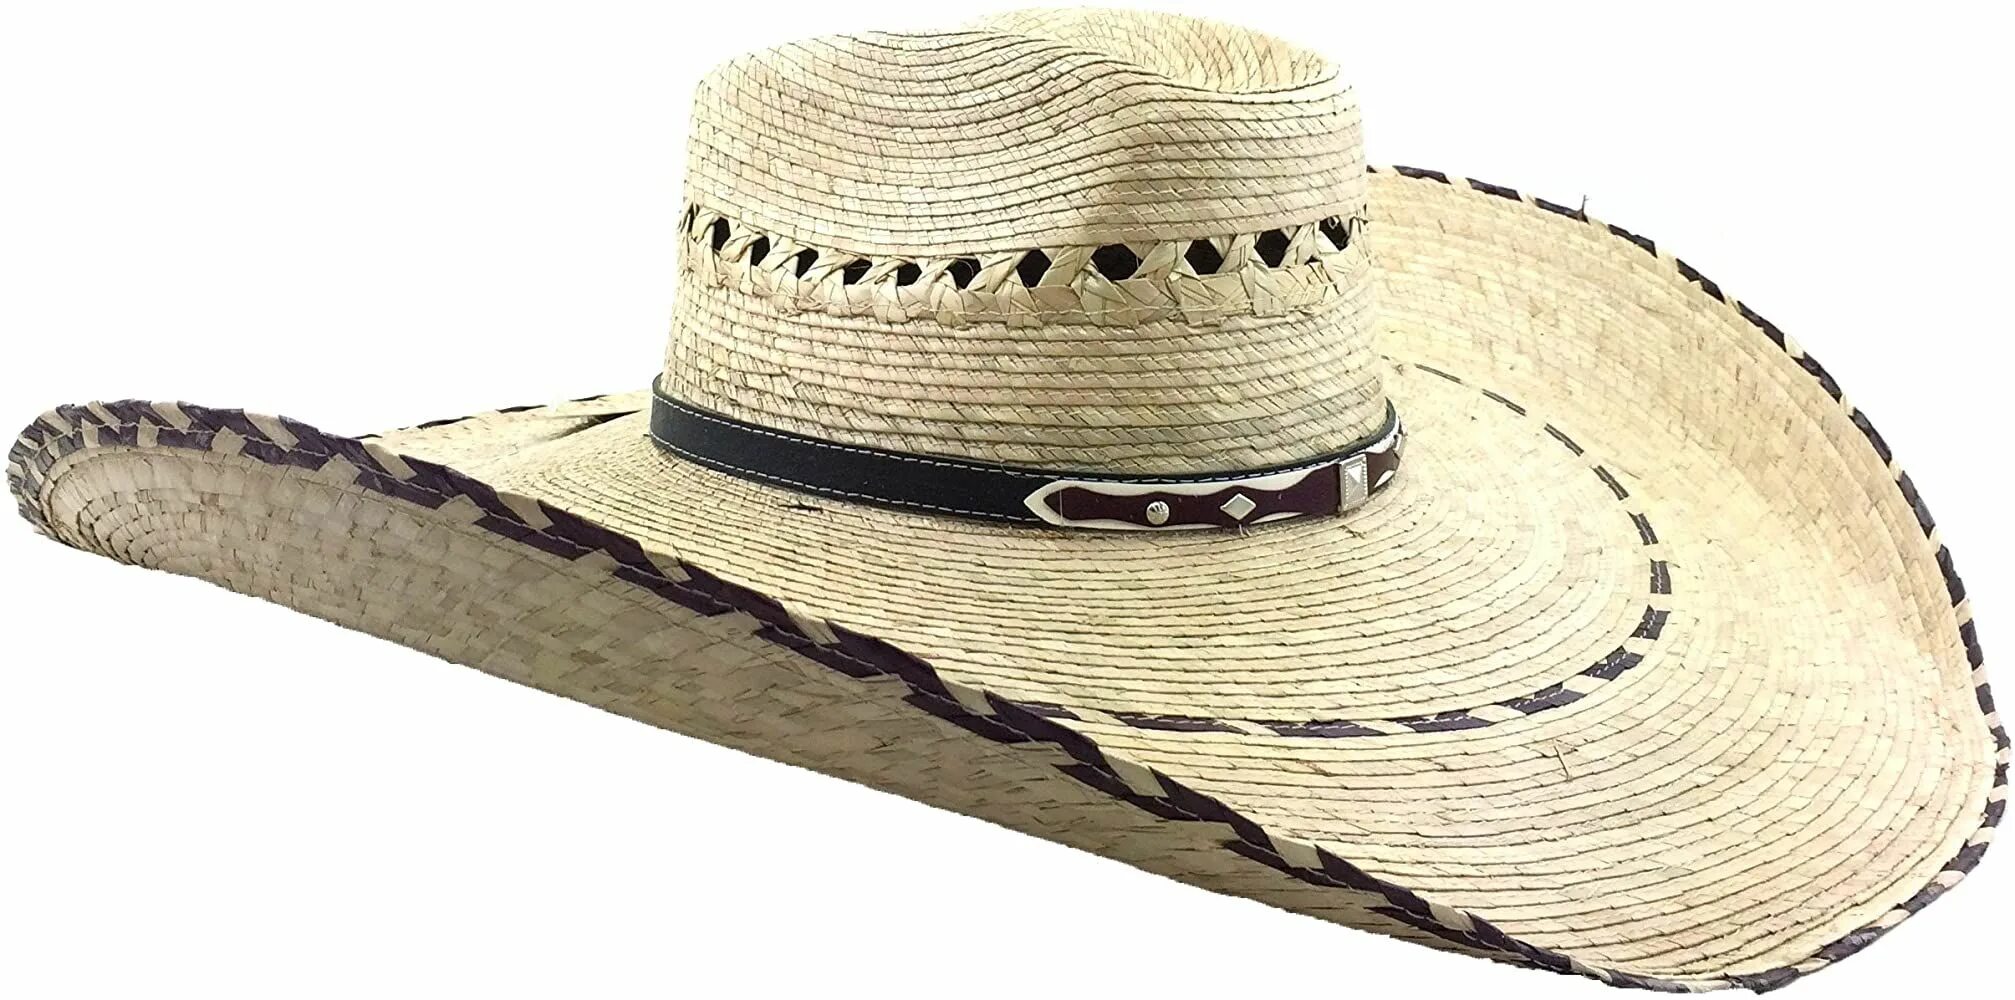 Шляпа Федора Гаучо. Шляпа ранчо. Cowboy big шляпа. Белая ковбойская шляпа с блестками. Мужская шляпа кроссворд